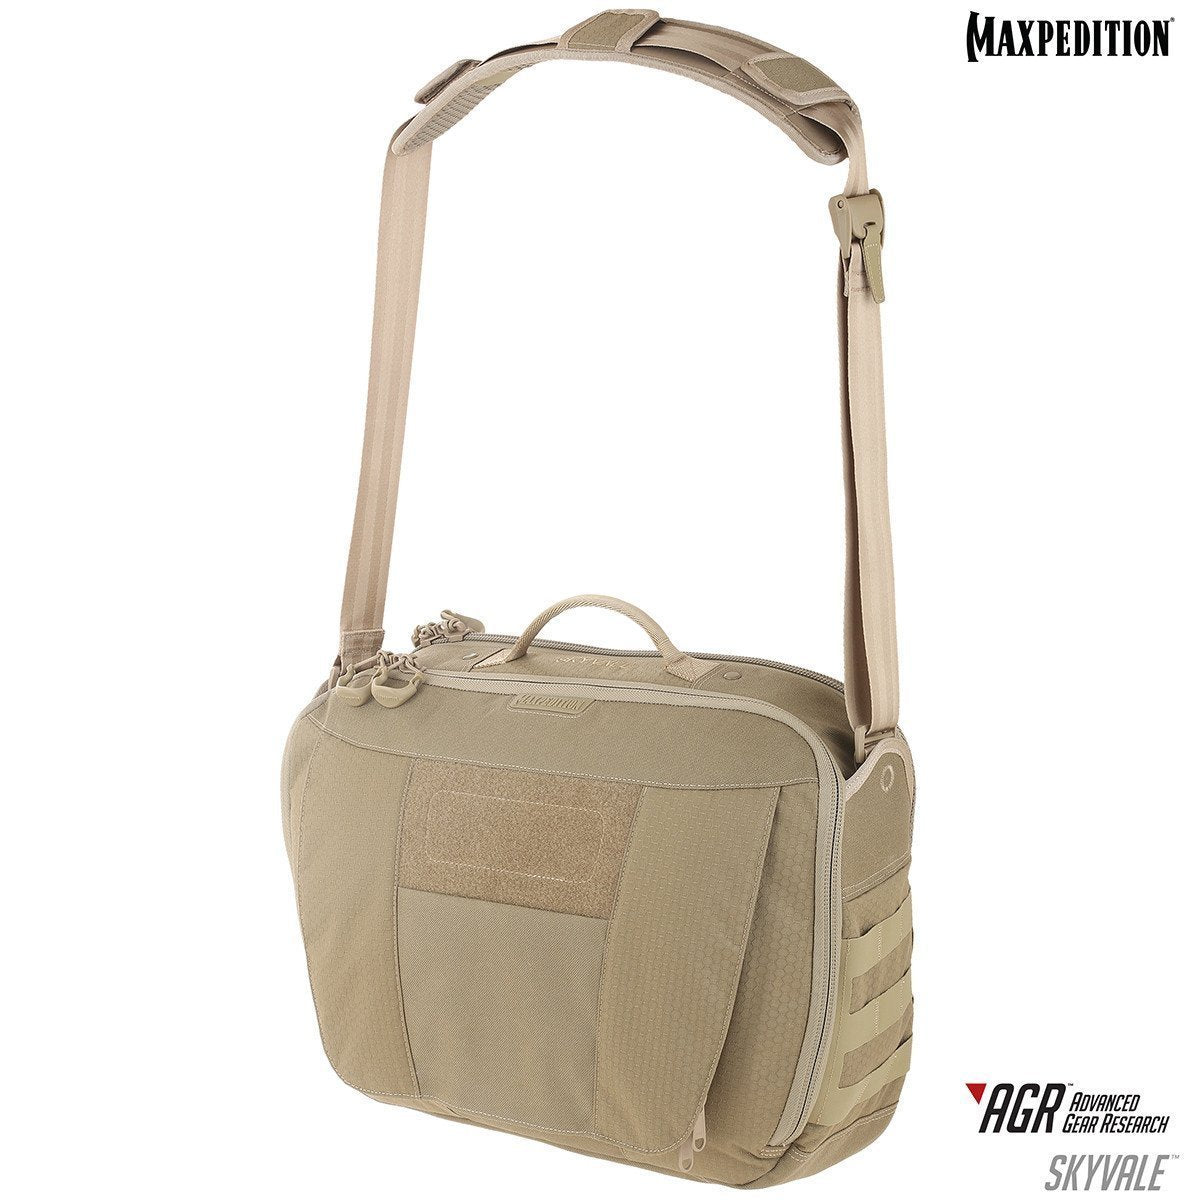 Maxpedition Skyvale Tech Messenger Bag 16L Tan Tactical Distributors Ltd New Zealand